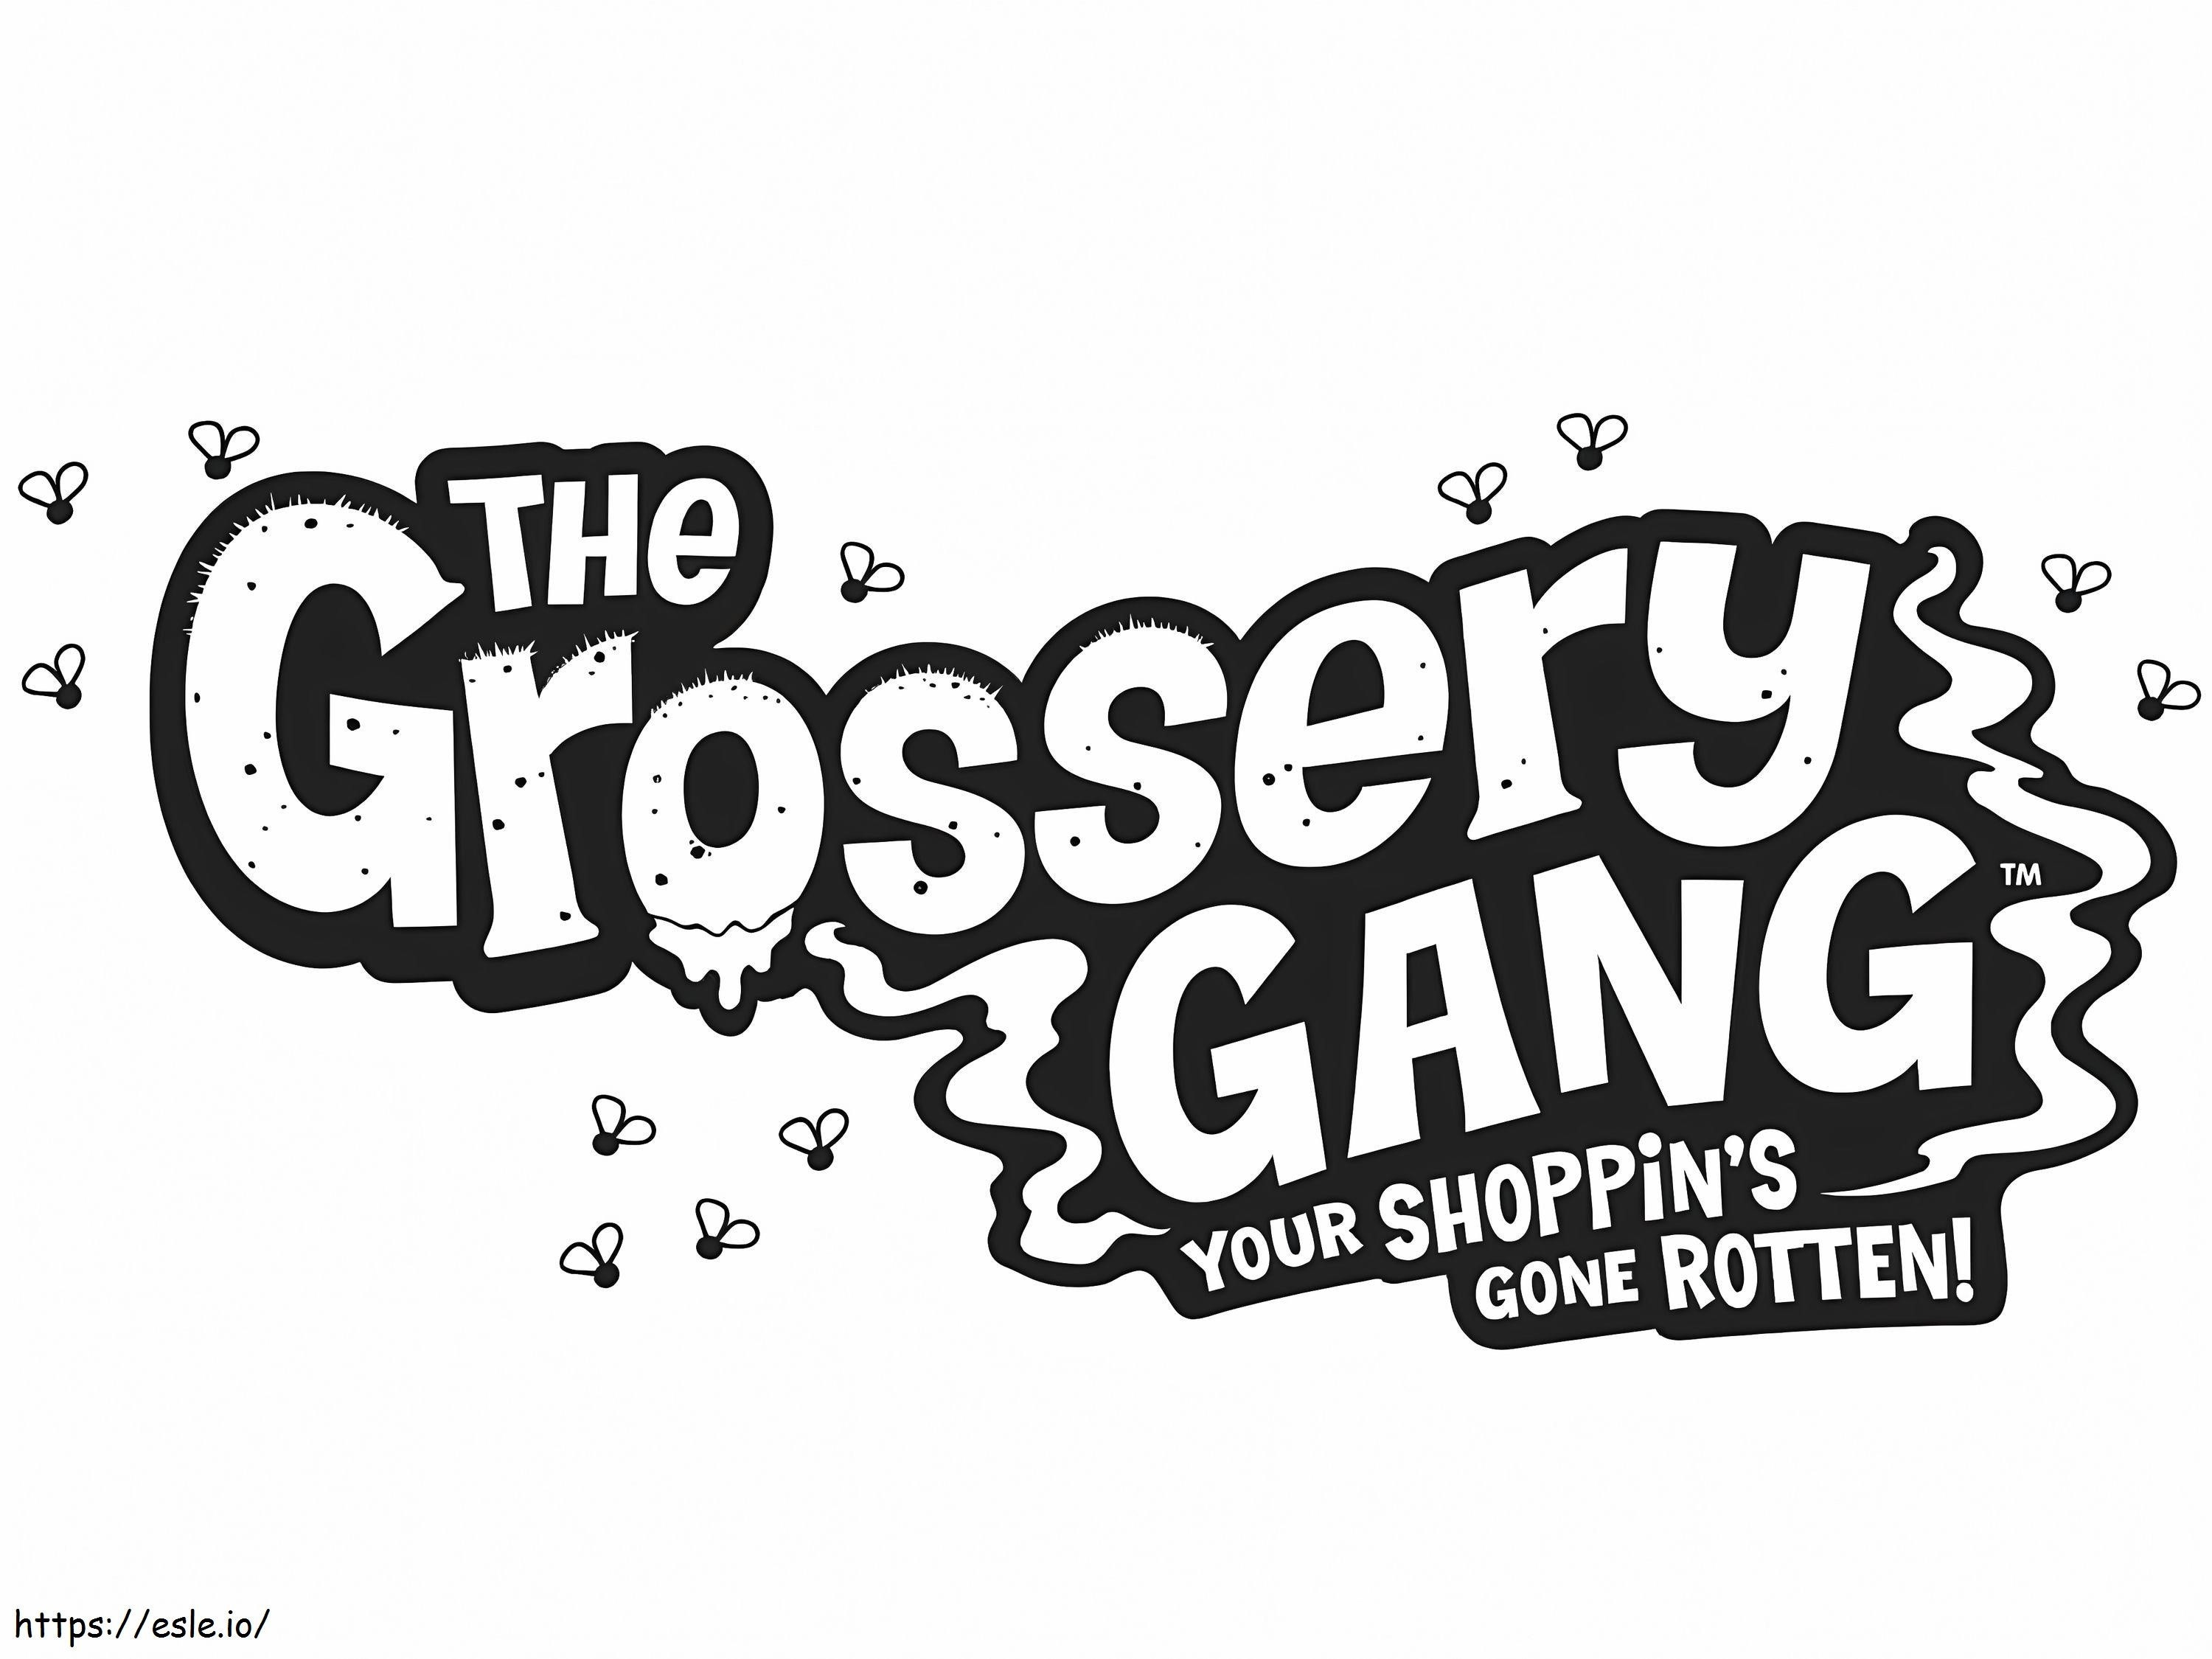 Logo della banda Grossery da colorare